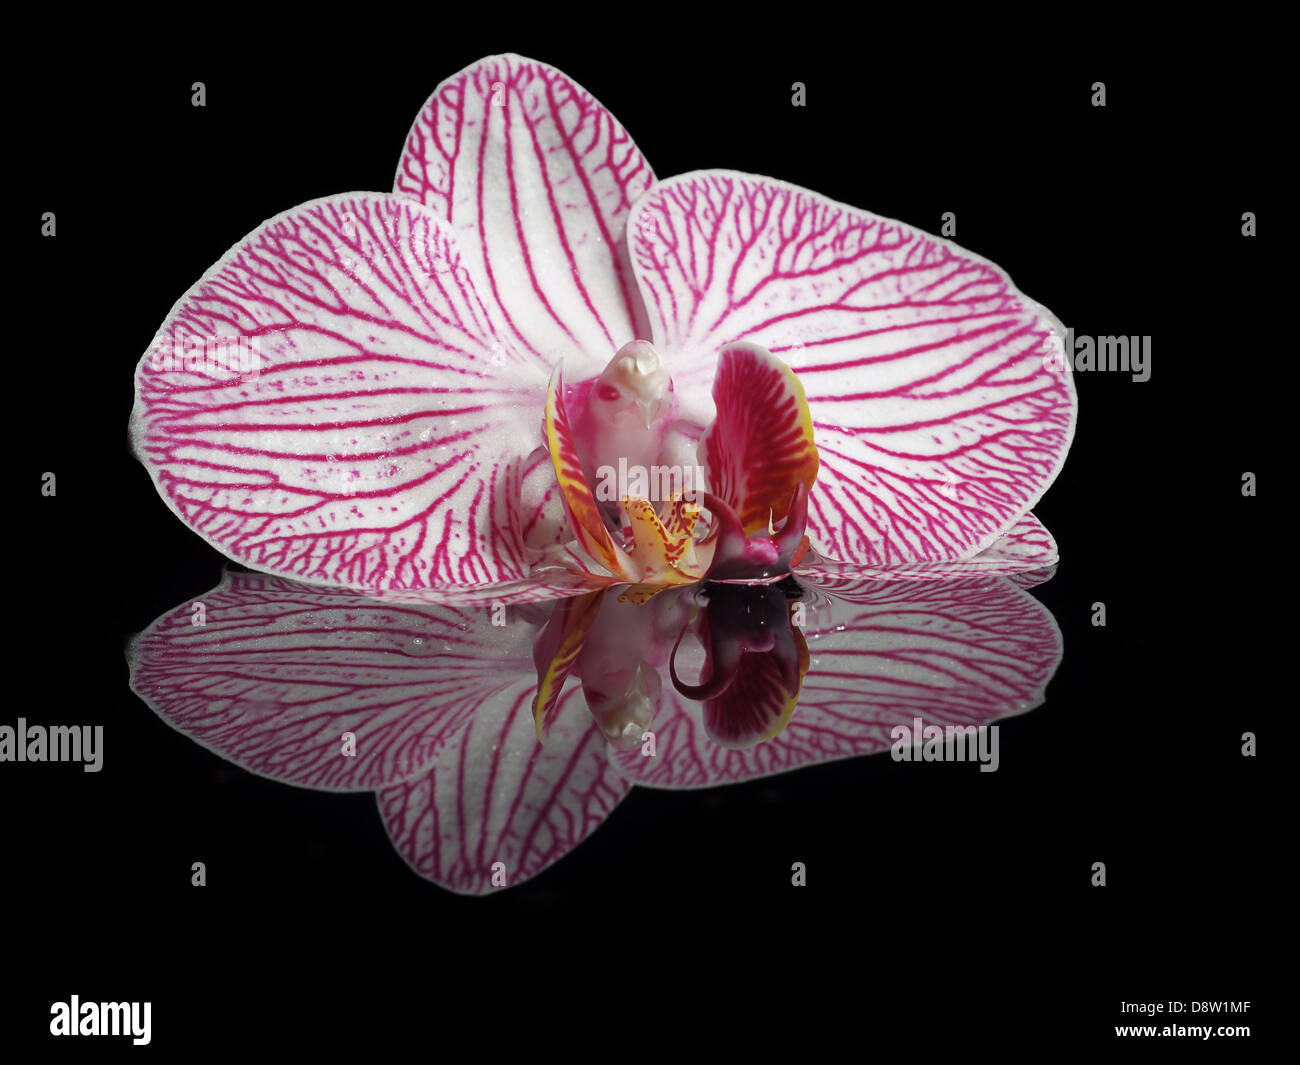 Immagine speculare con il bianco-viola orchid Foto Stock